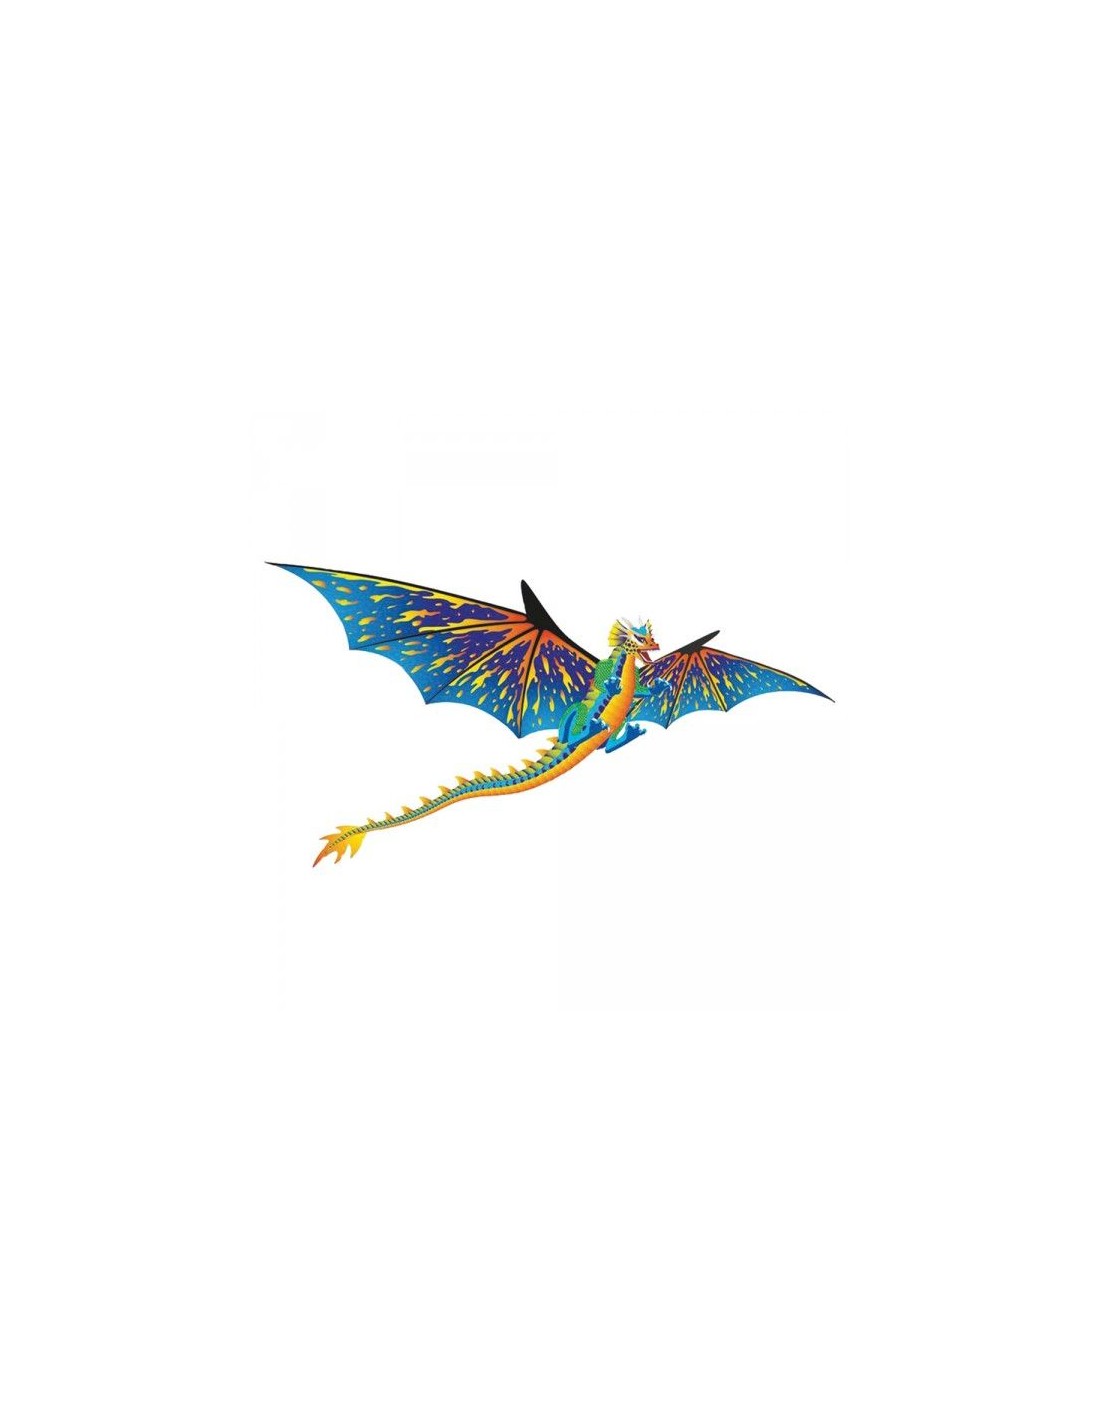 Cerf-volant dragon 3D 160x260cm OFFRE EXCLUSIVE!! 